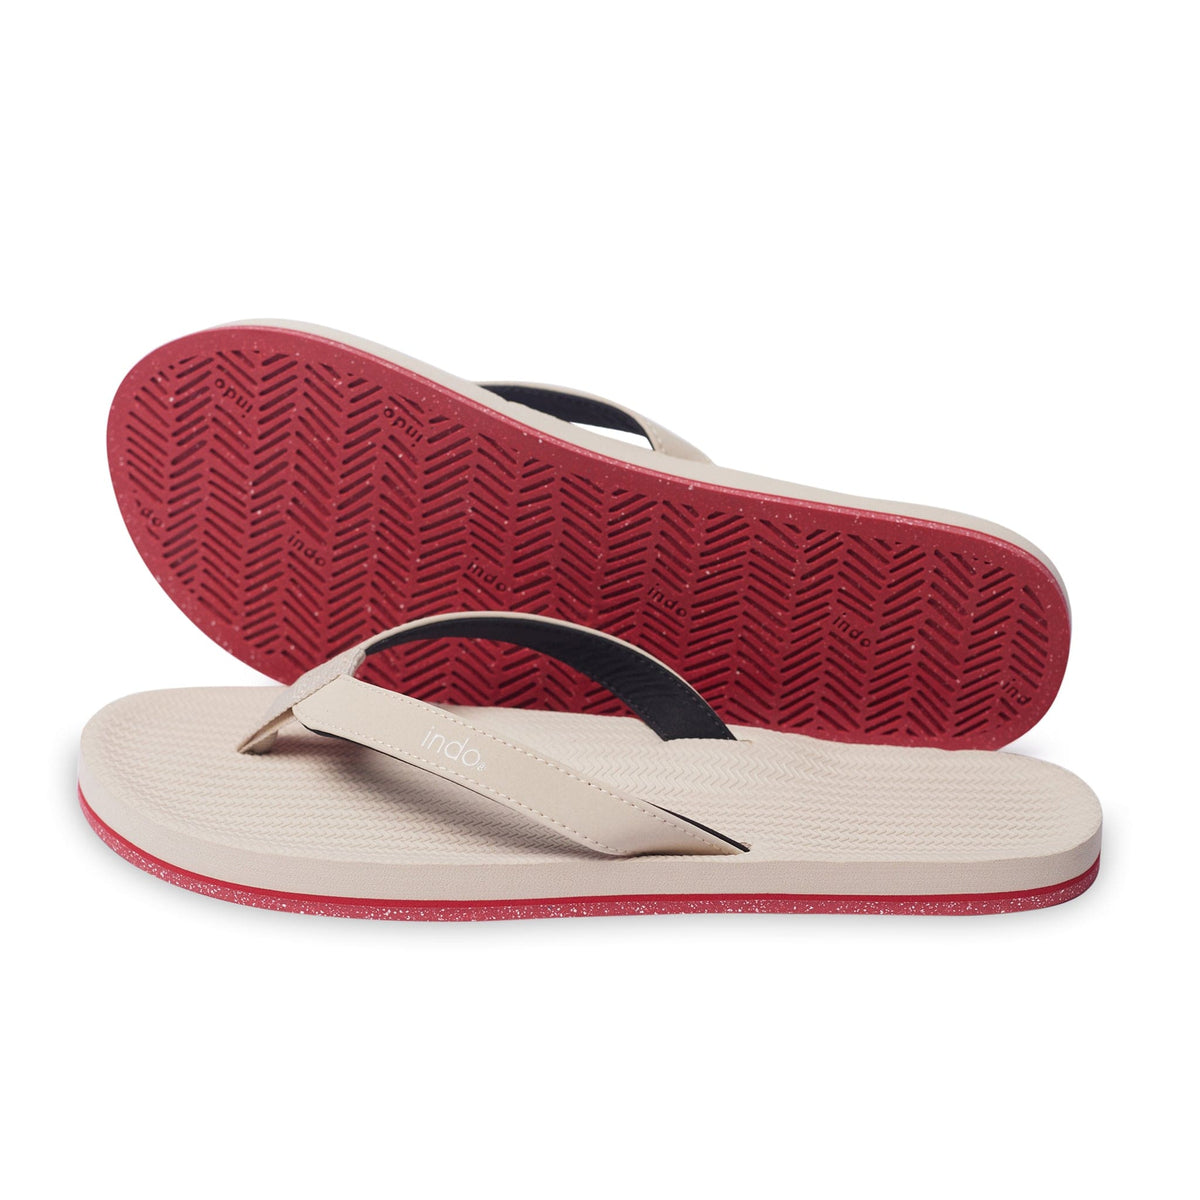 Women’s Flip Flops Sneaker Sole - Sea Salt/Red Sole - Indosole